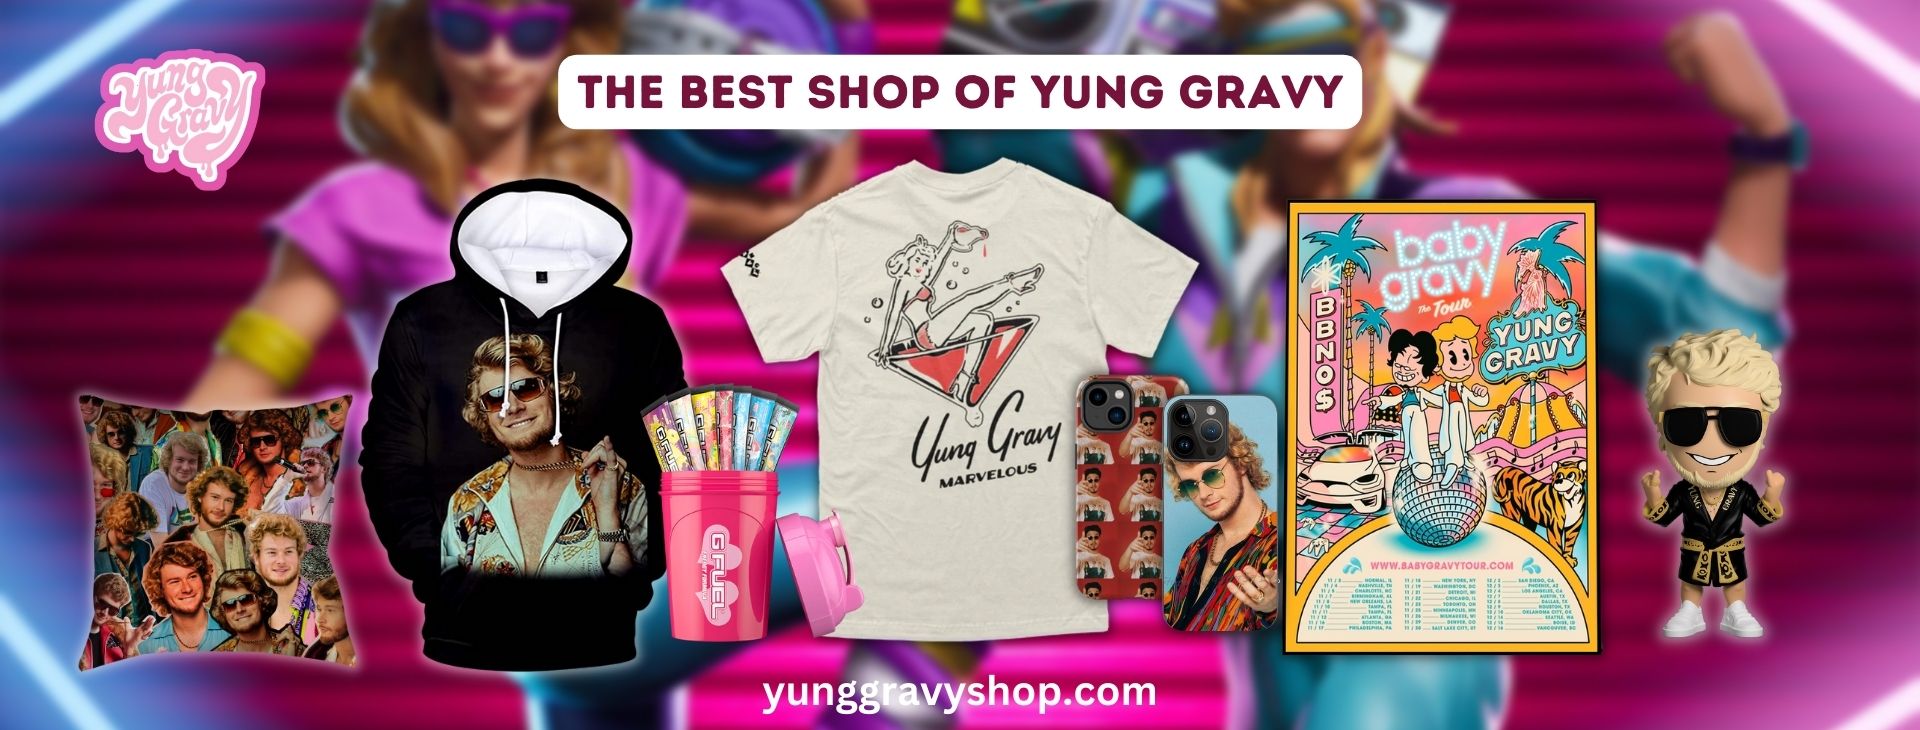 Yung Gravy merch Banner - Yung Gravy Shop